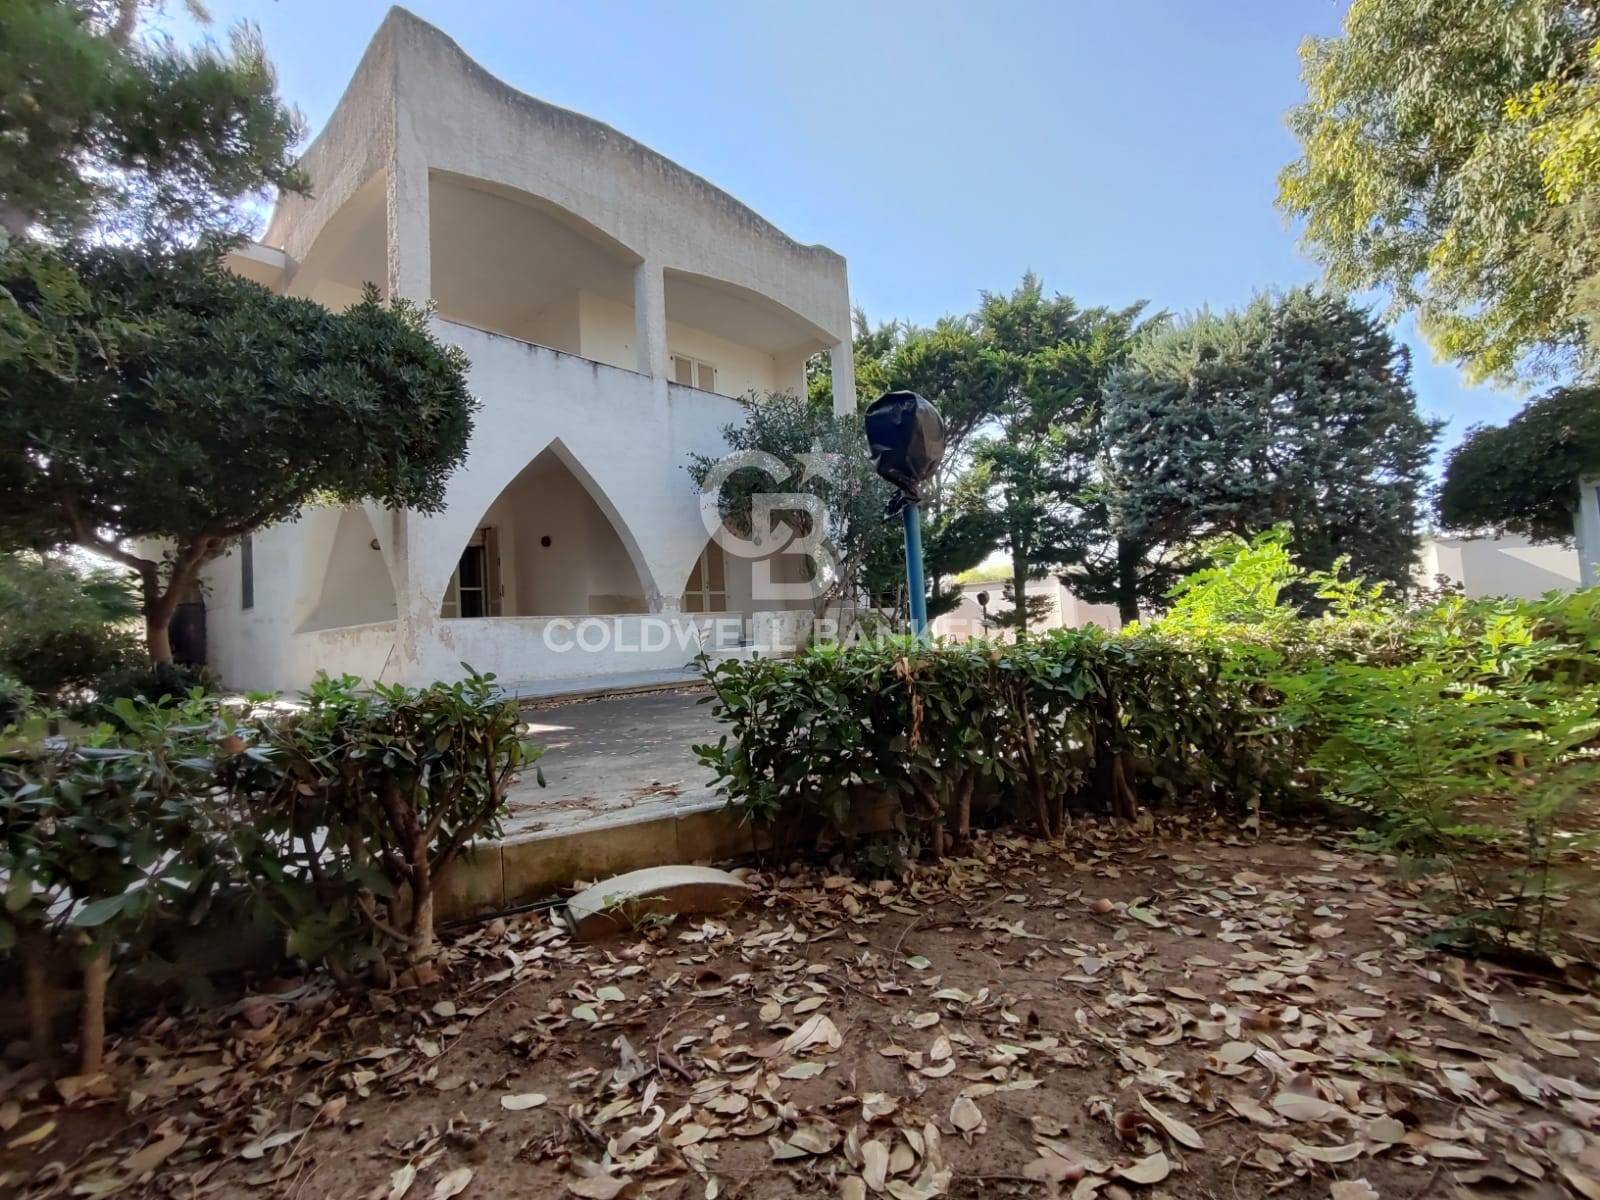 Villa in vendita a Torchiarolo, 8 locali, zona inuso, prezzo € 250.000 | PortaleAgenzieImmobiliari.it